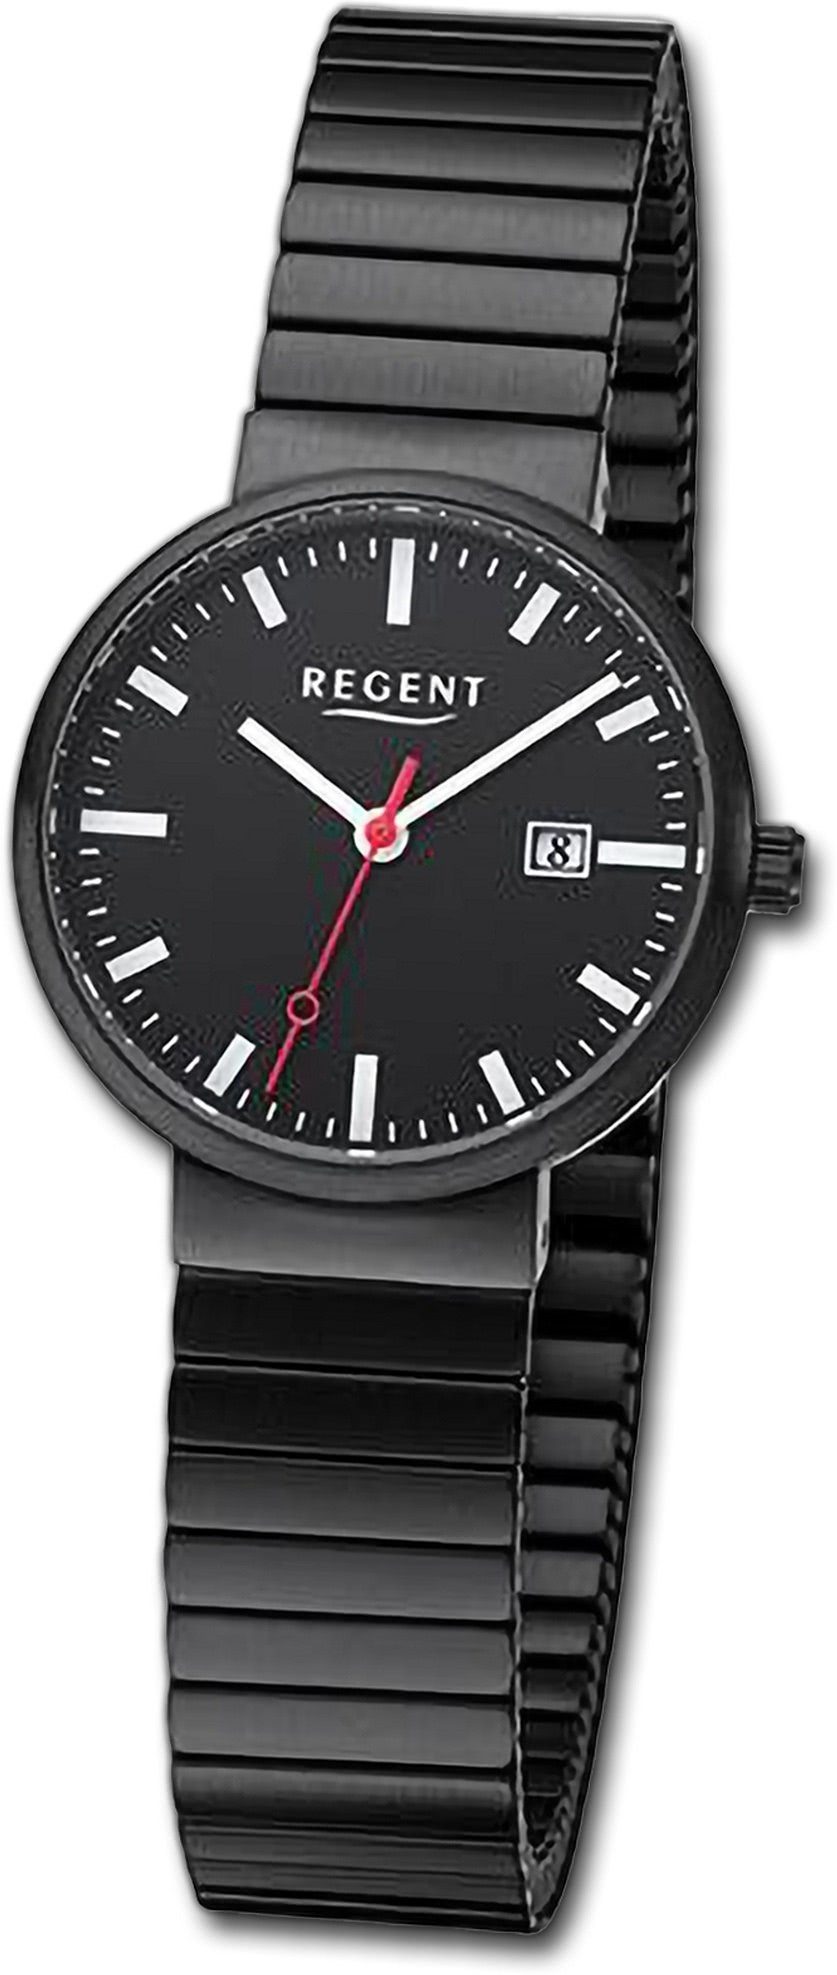 Regent Quarzuhr Regent Damen Armbanduhr Analog, Damenuhr Edelstahlarmband schwarz, rundes Gehäuse, extragroß (ca 29mm)